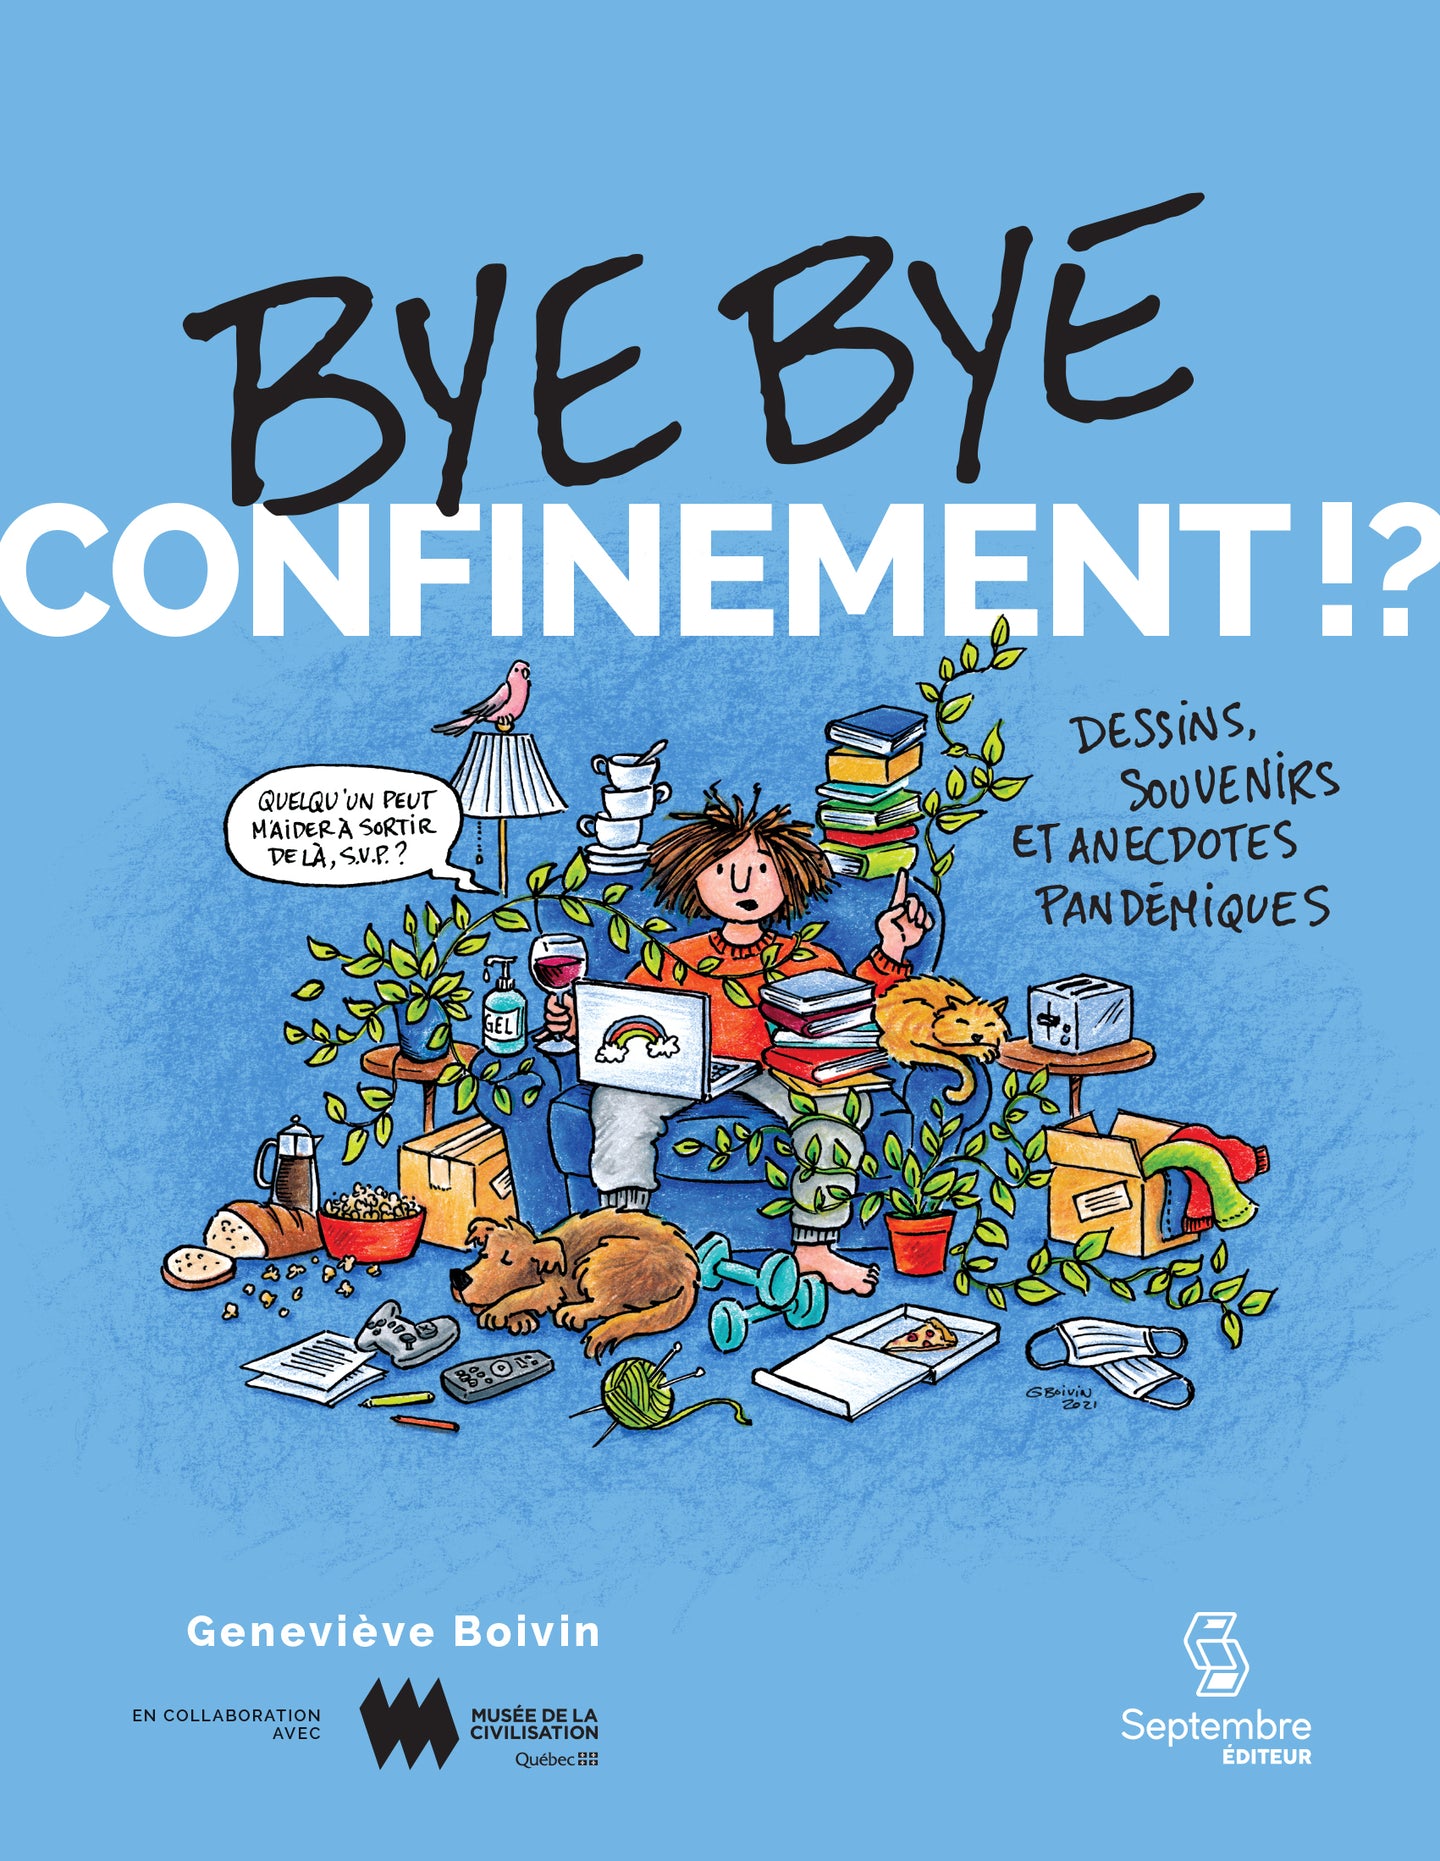 Bye bye confinement!? (numérique)